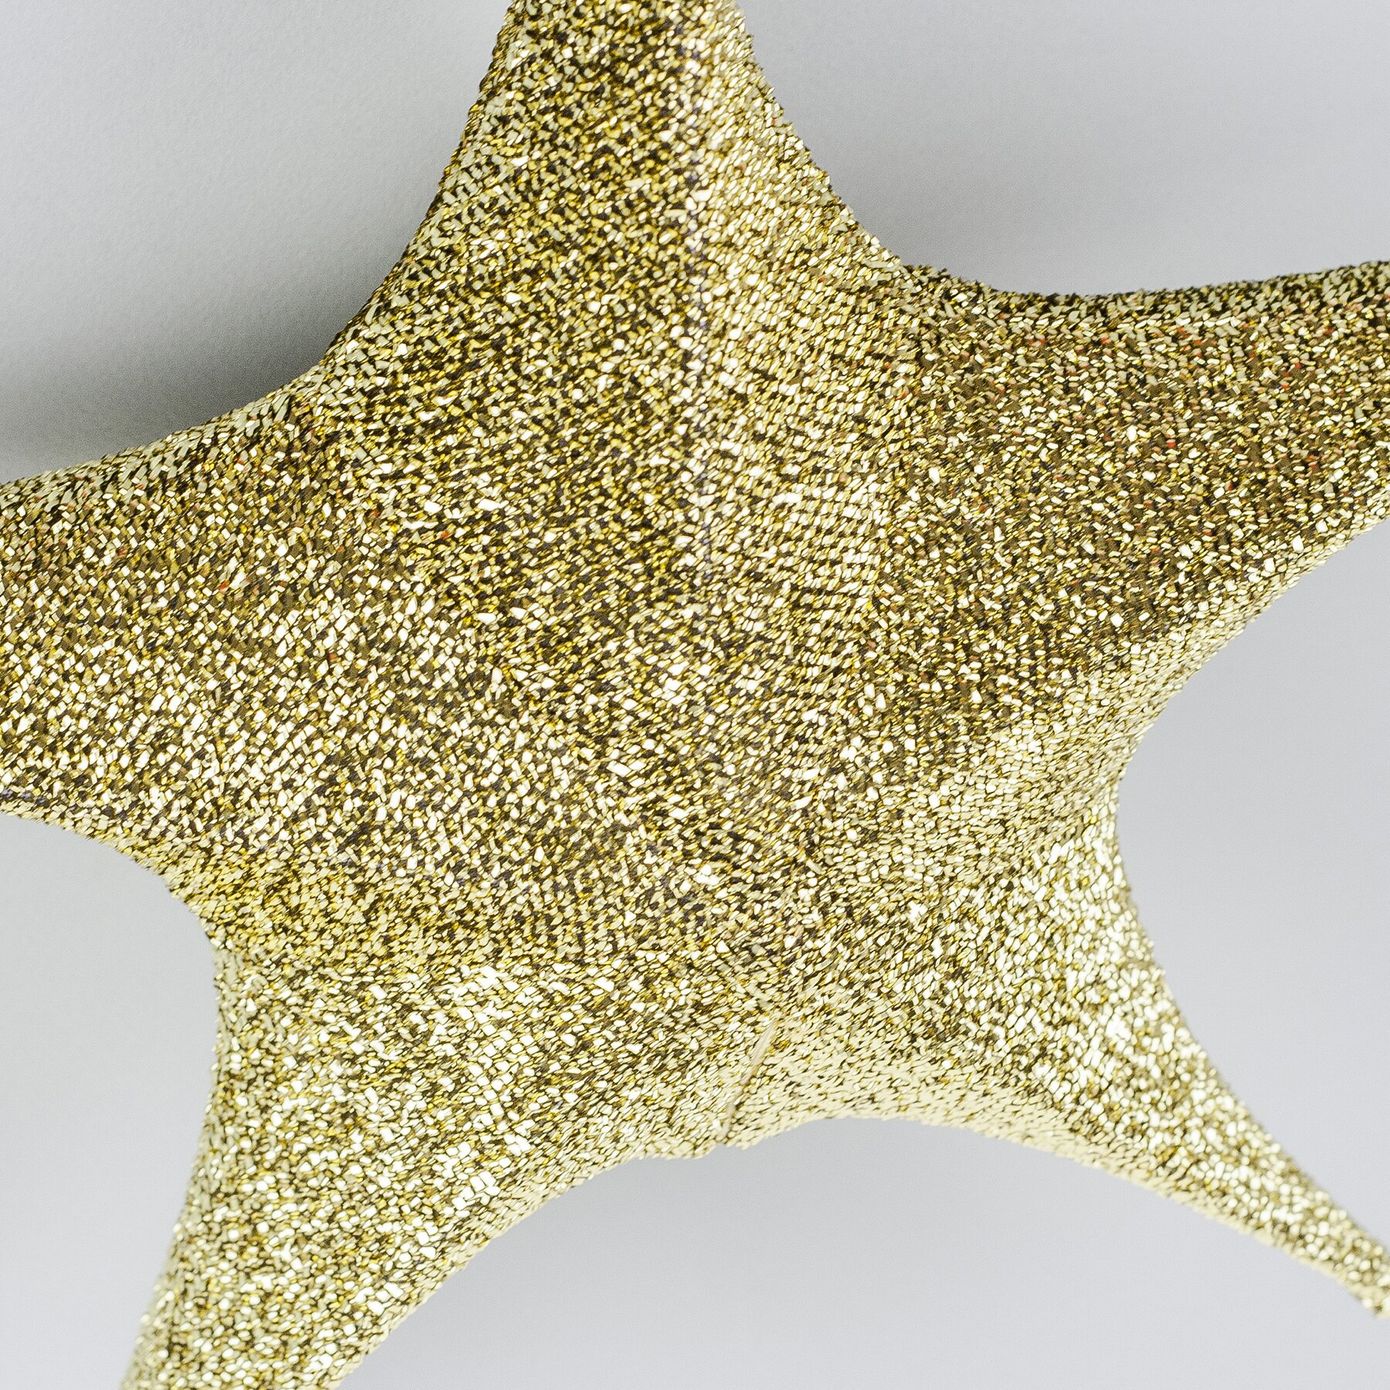 Звезда подвесная для декора из ткани, темное золото, 40 см